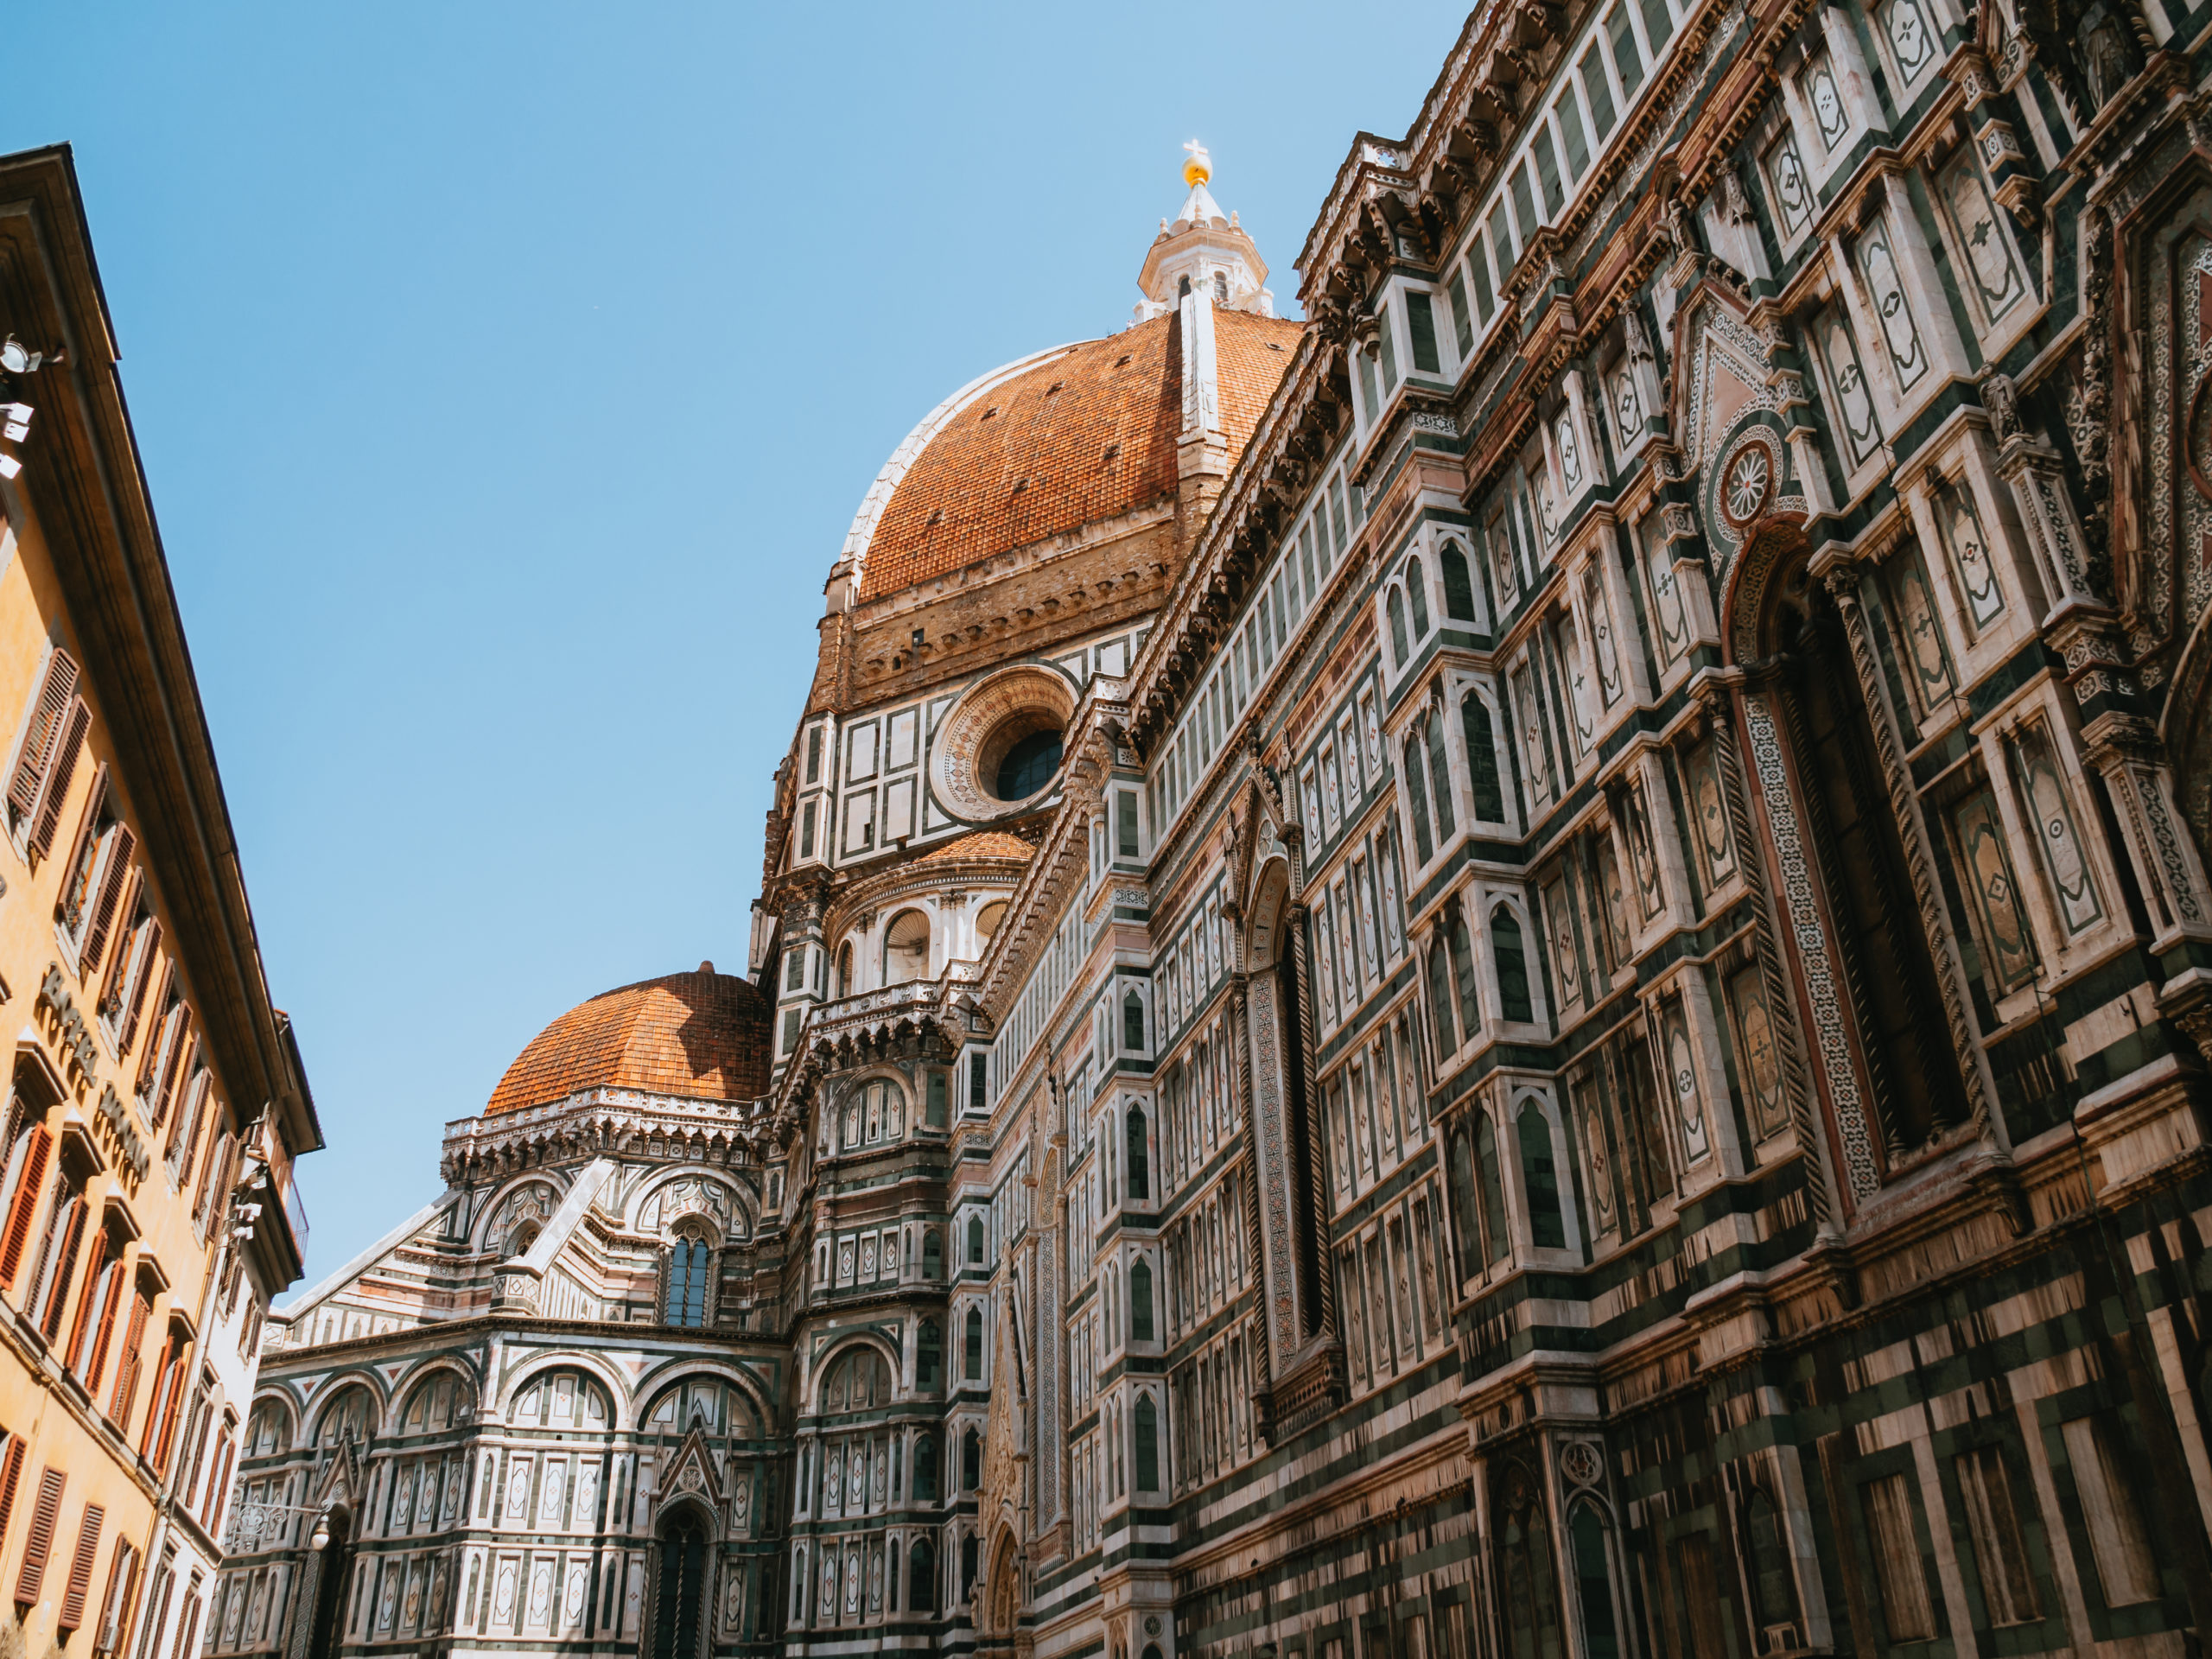 イタリア 24時間でフィレンツェの観光名所を巡る写真旅 インドア人事のこだわり